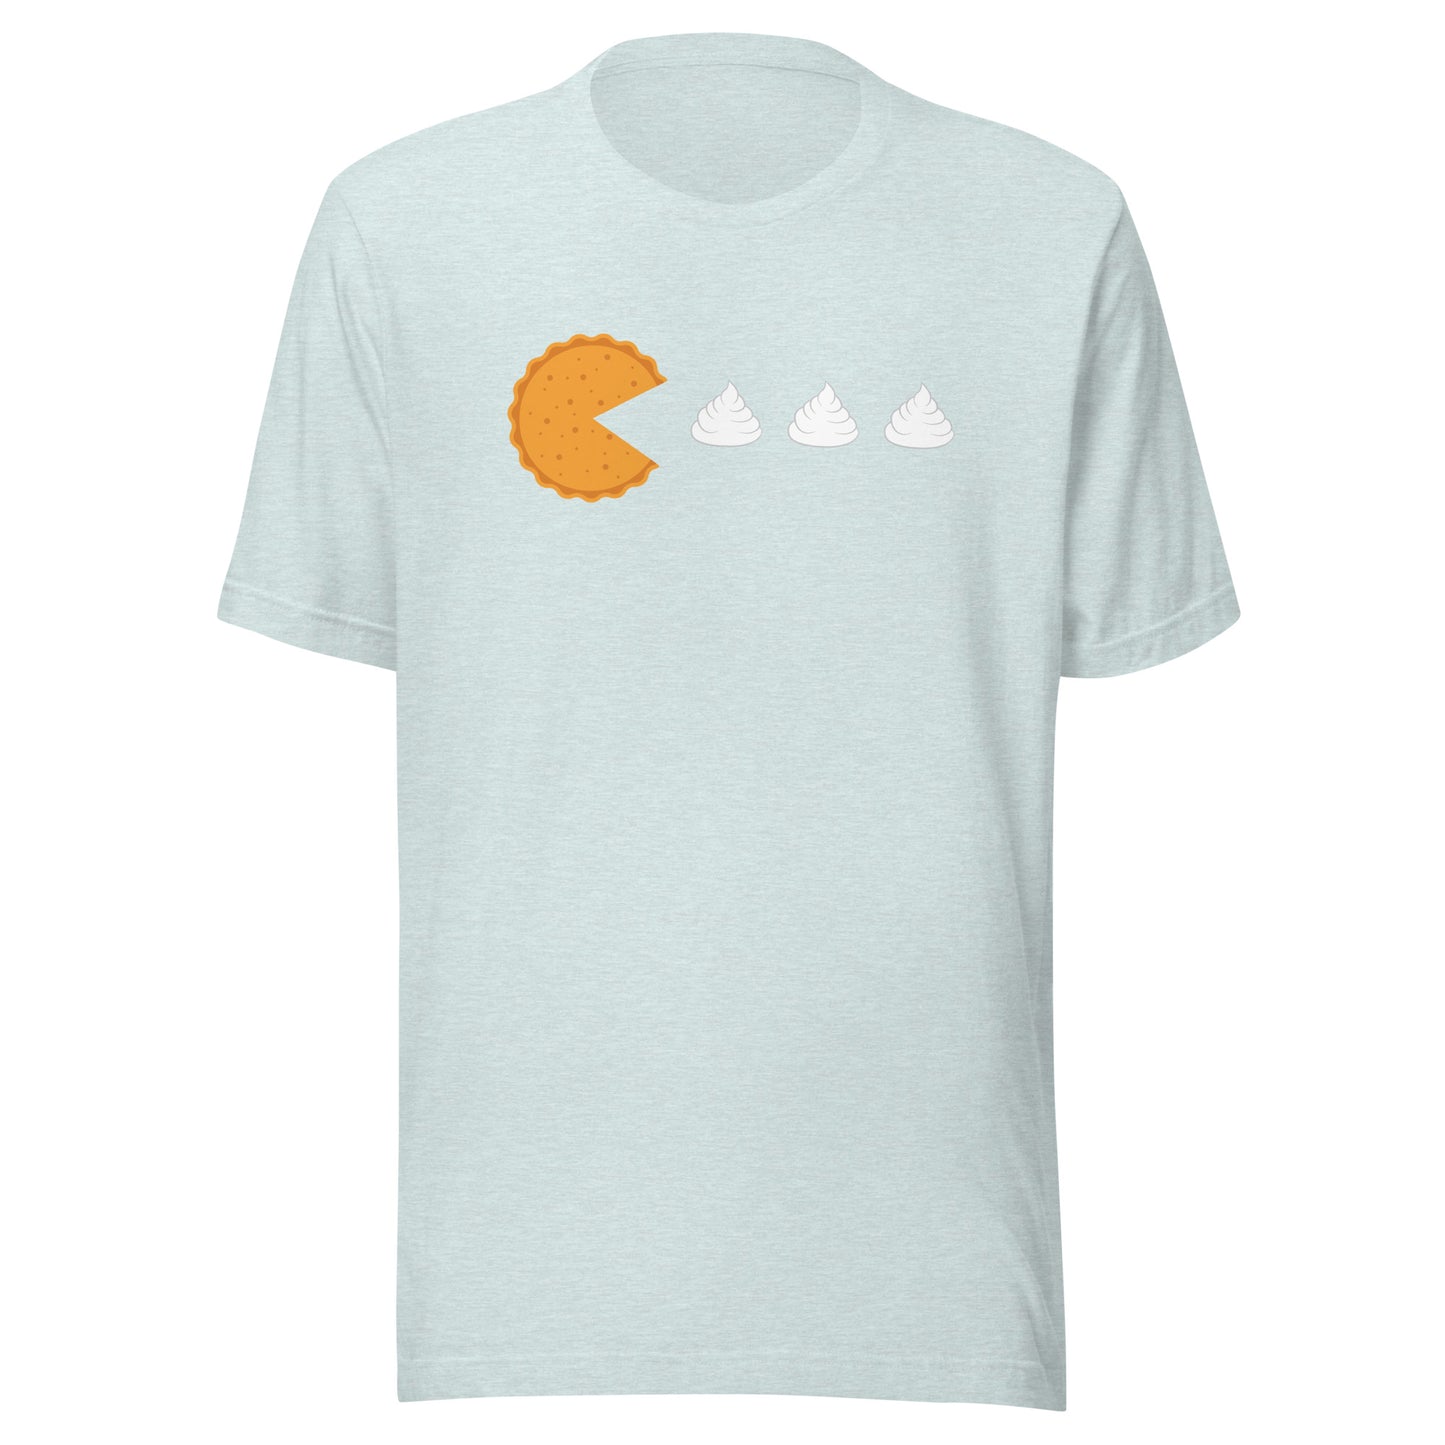 Pumpkin Pie Video Game T-Shirt